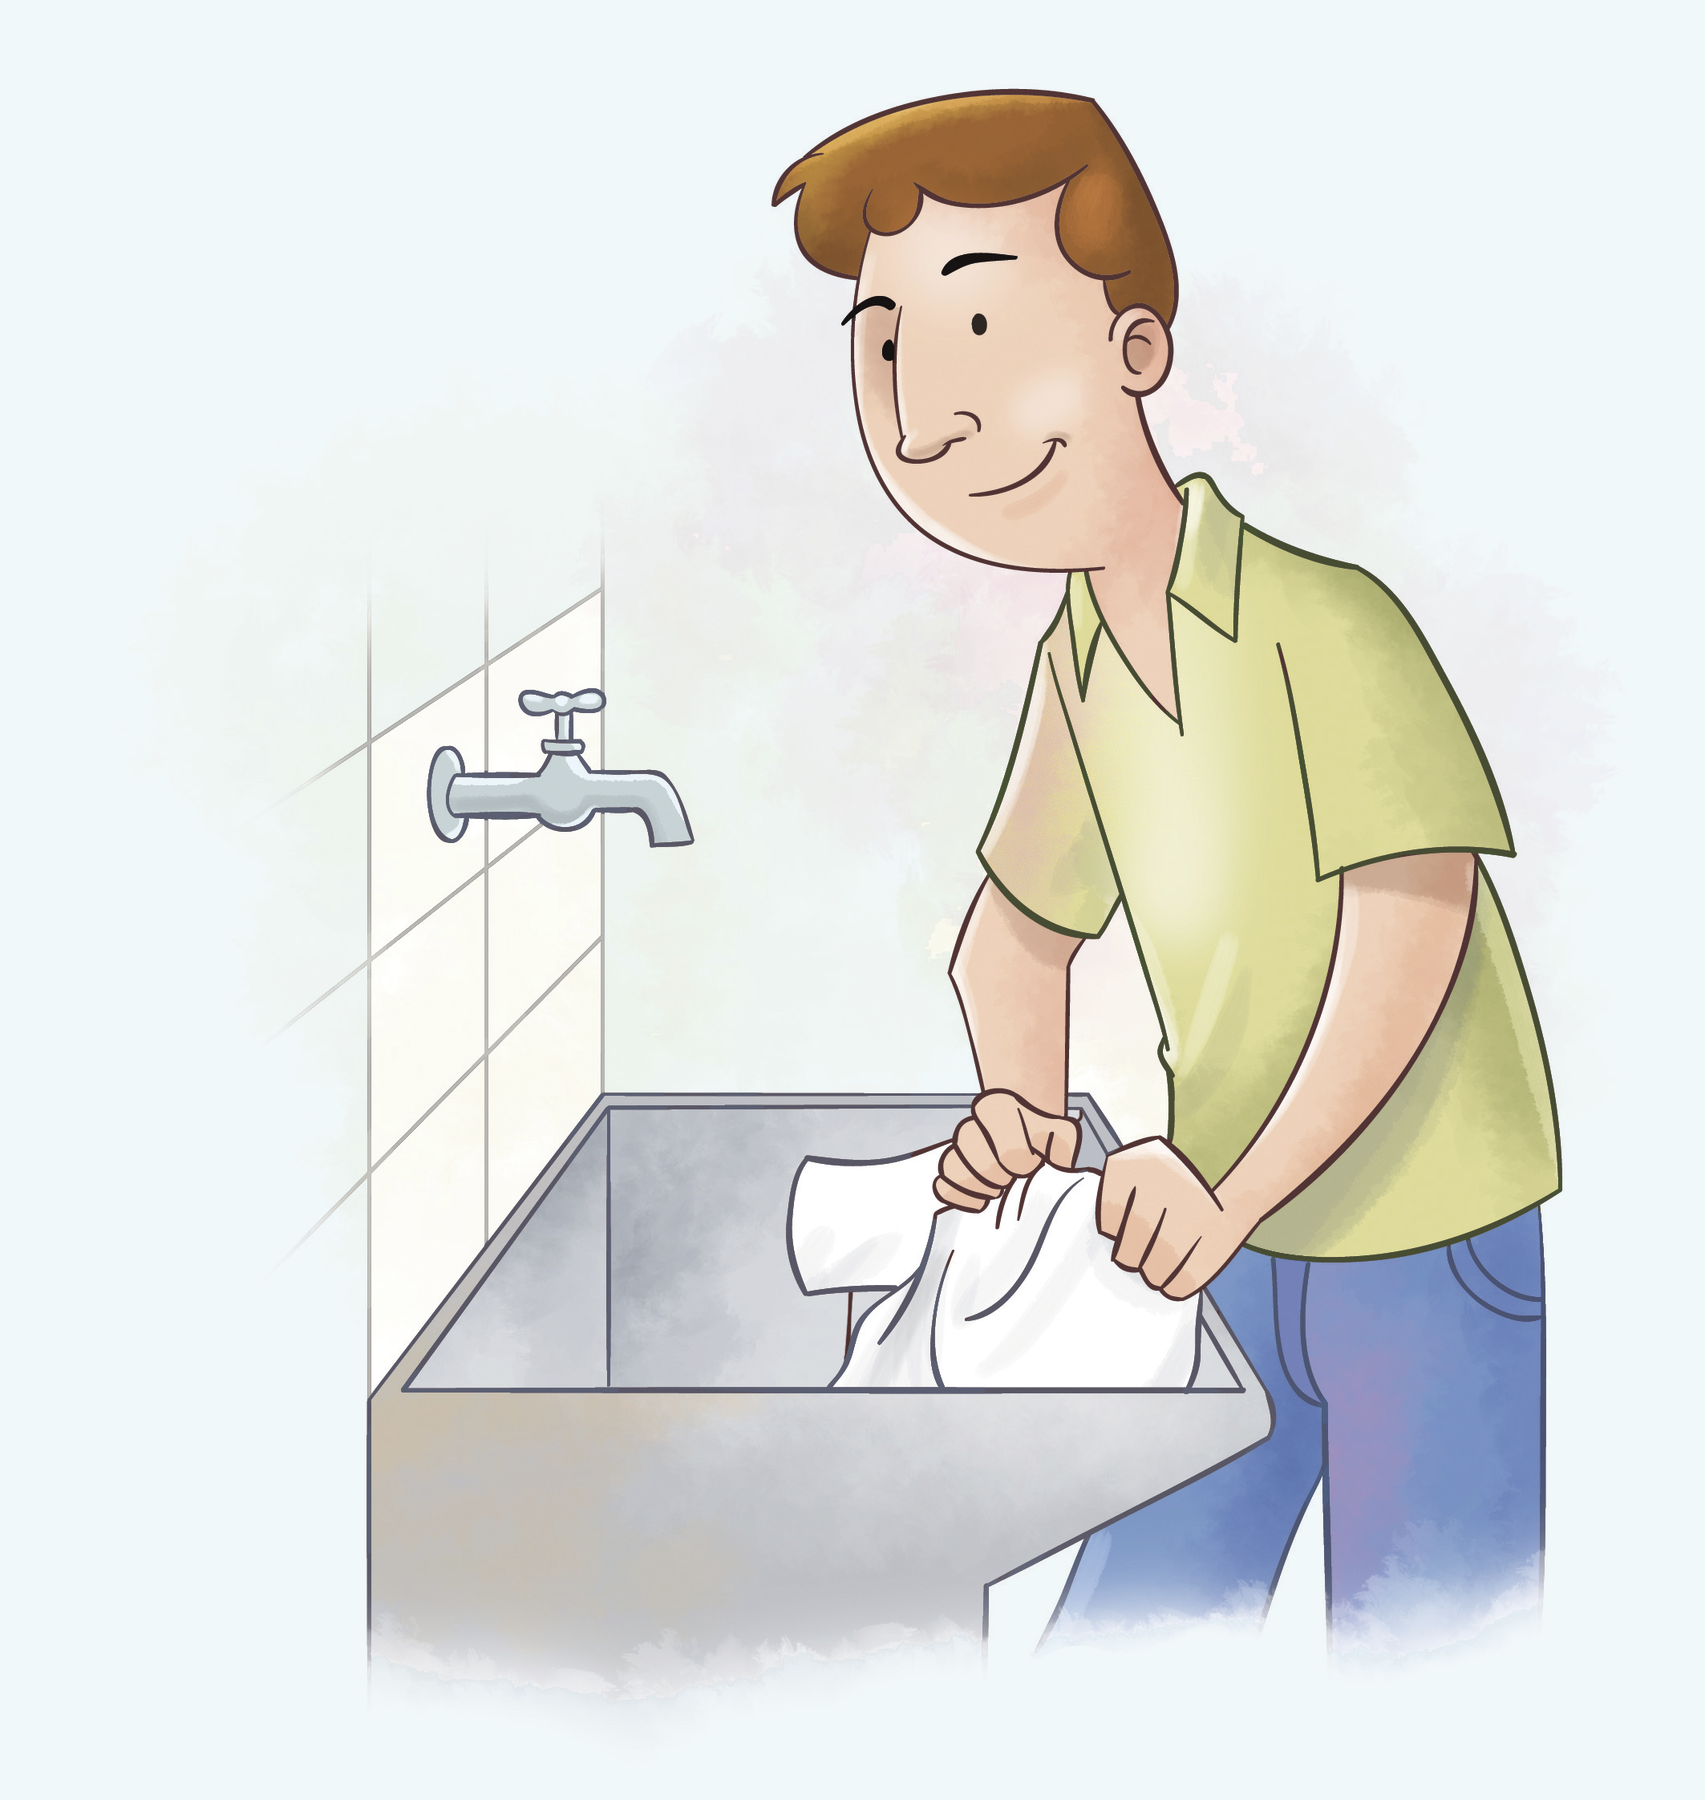 Ilustração. Homem branco de cabelo castanho, camisa verde e calça azul lavando roupa no tanque. A torneira está fechada.